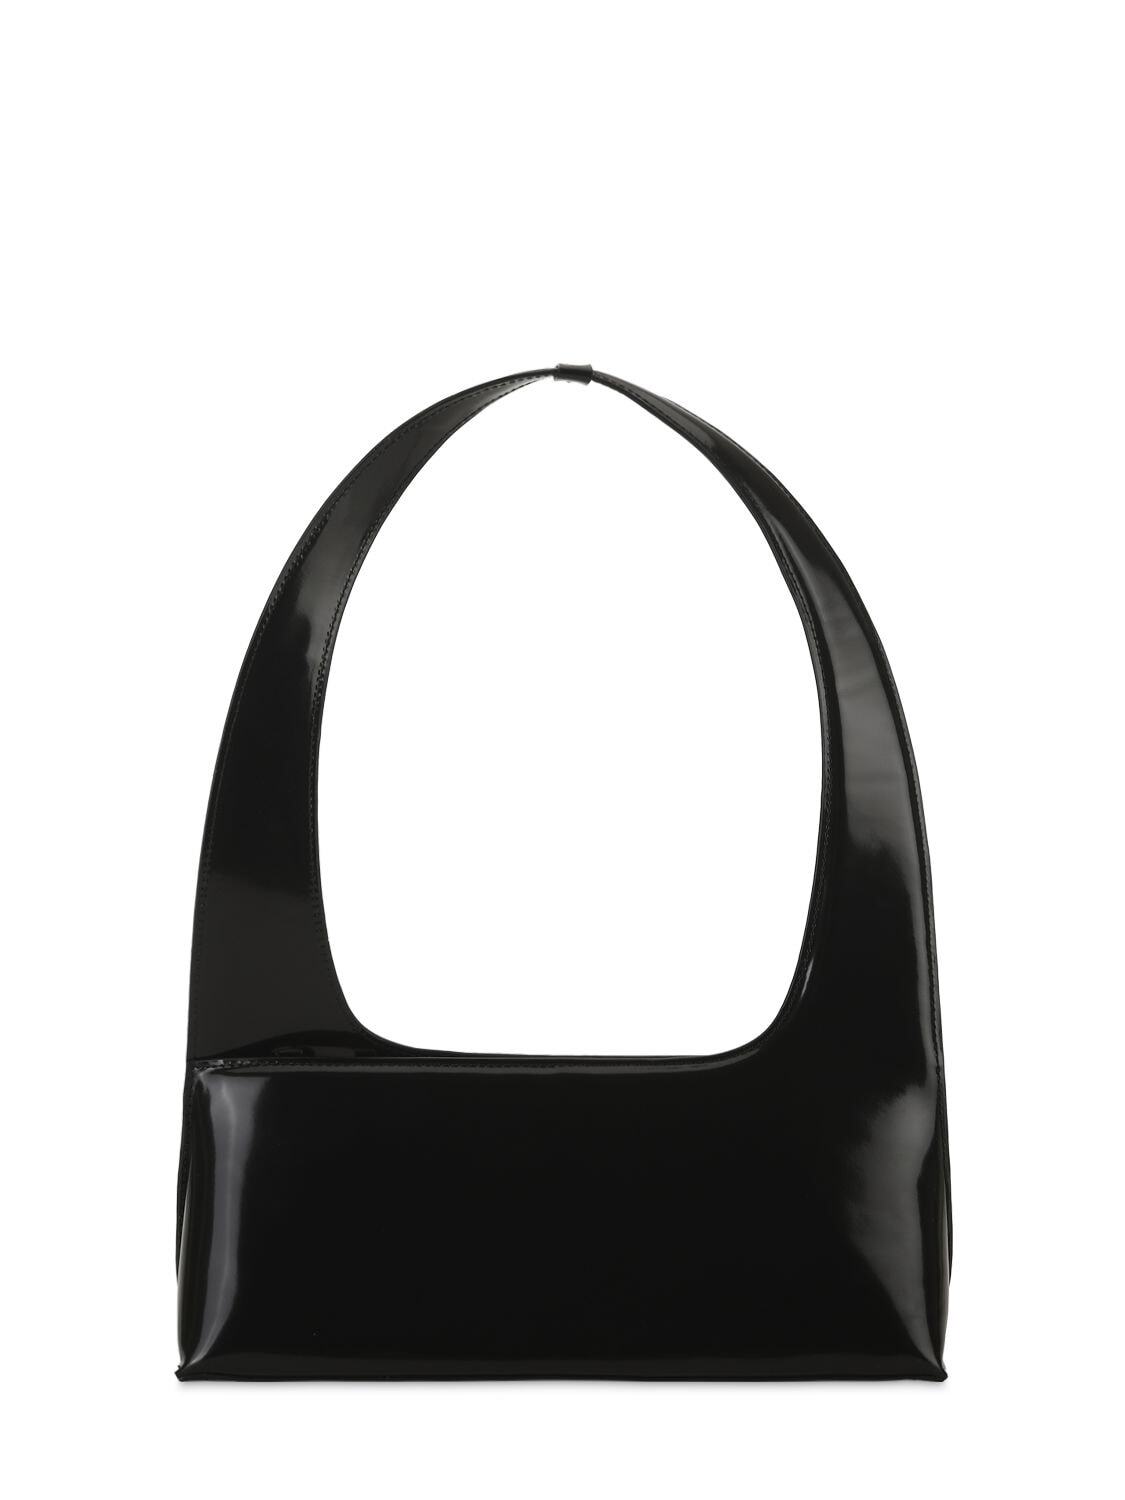 OSOI Bridge Leather Shoulder Bag in black